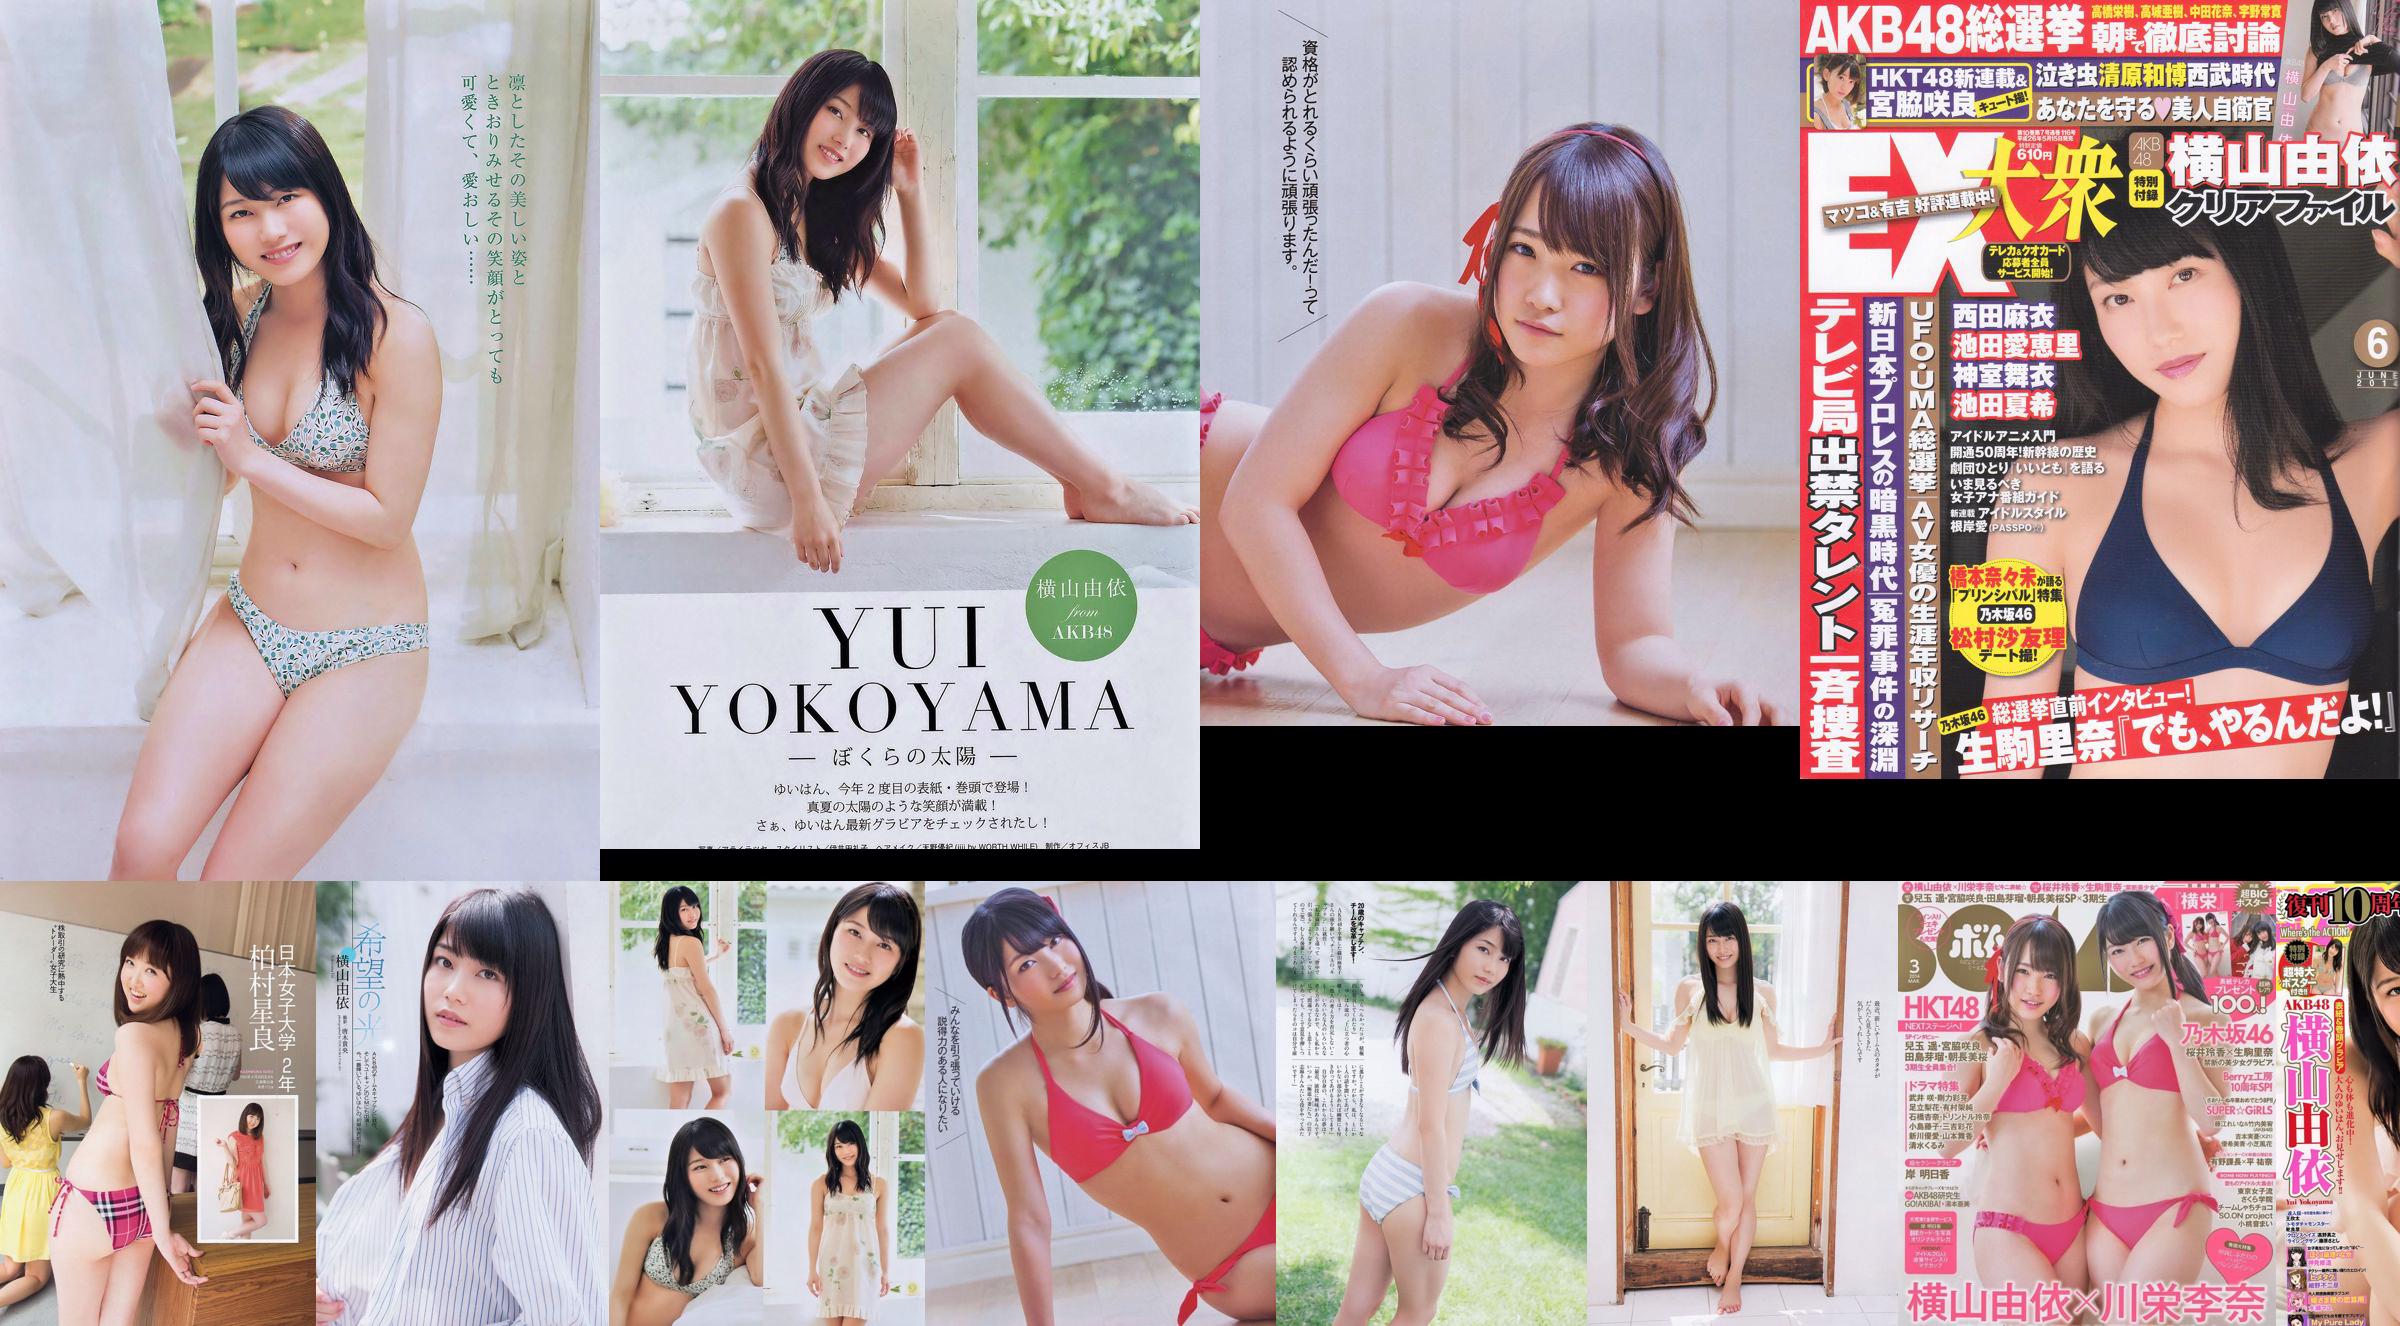 Momoiro Clover Z Yui Yokoyama Yua Shinkawa Mio Uema Anri Sugihara Kumi Yagami [Playboy Mingguan] 2013 No.20 Foto Moshi No.dcf532 Halaman 1